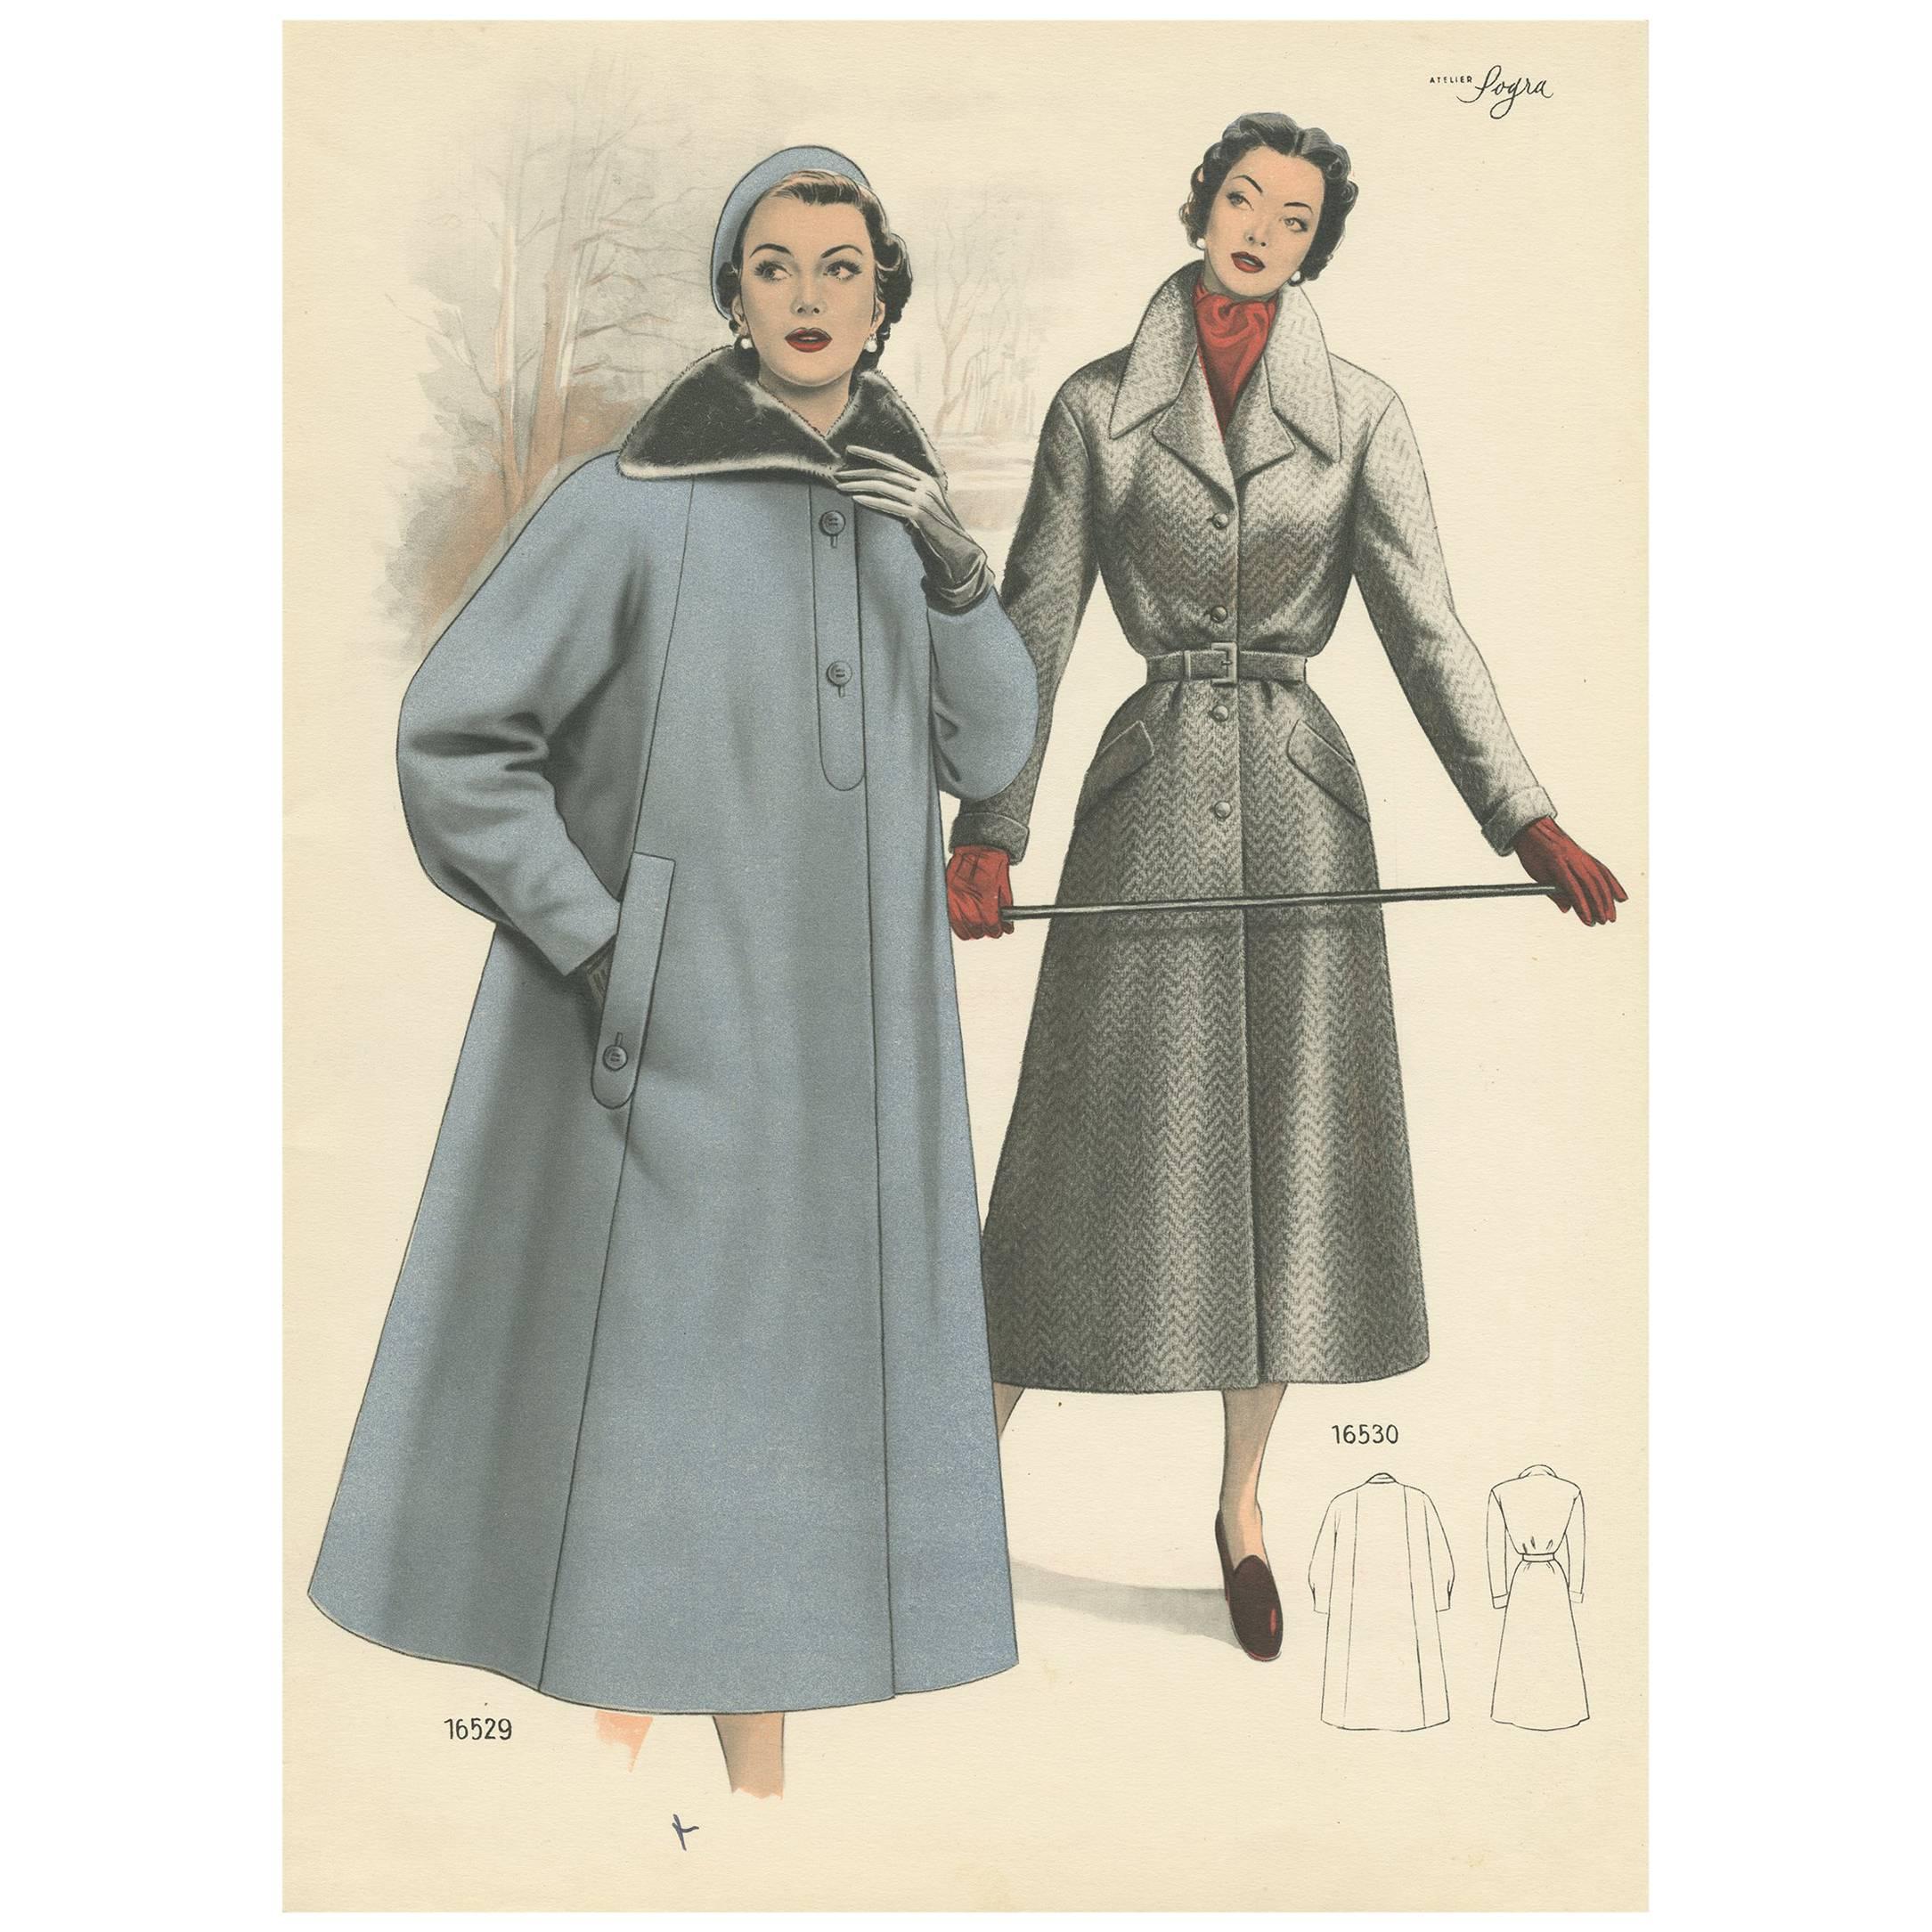 Impression de mode ancienne 'Pl. 16529' publiée dans Le Tailleur Moderne, 1954